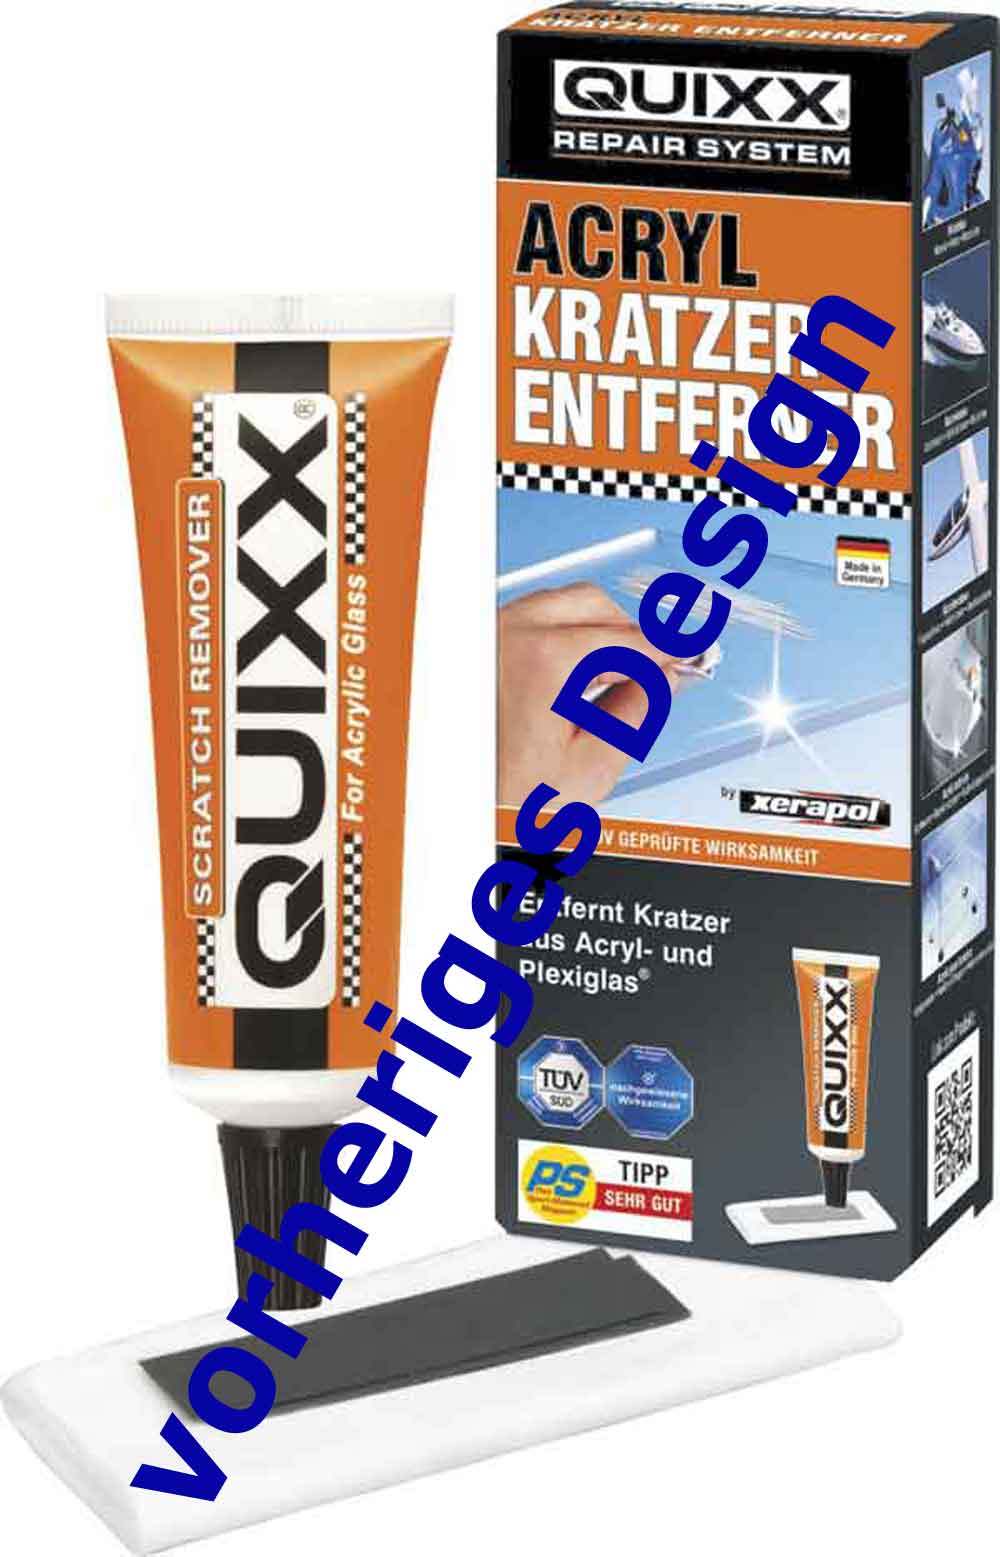 Quixx Acryl Kratzer Entferner 50252